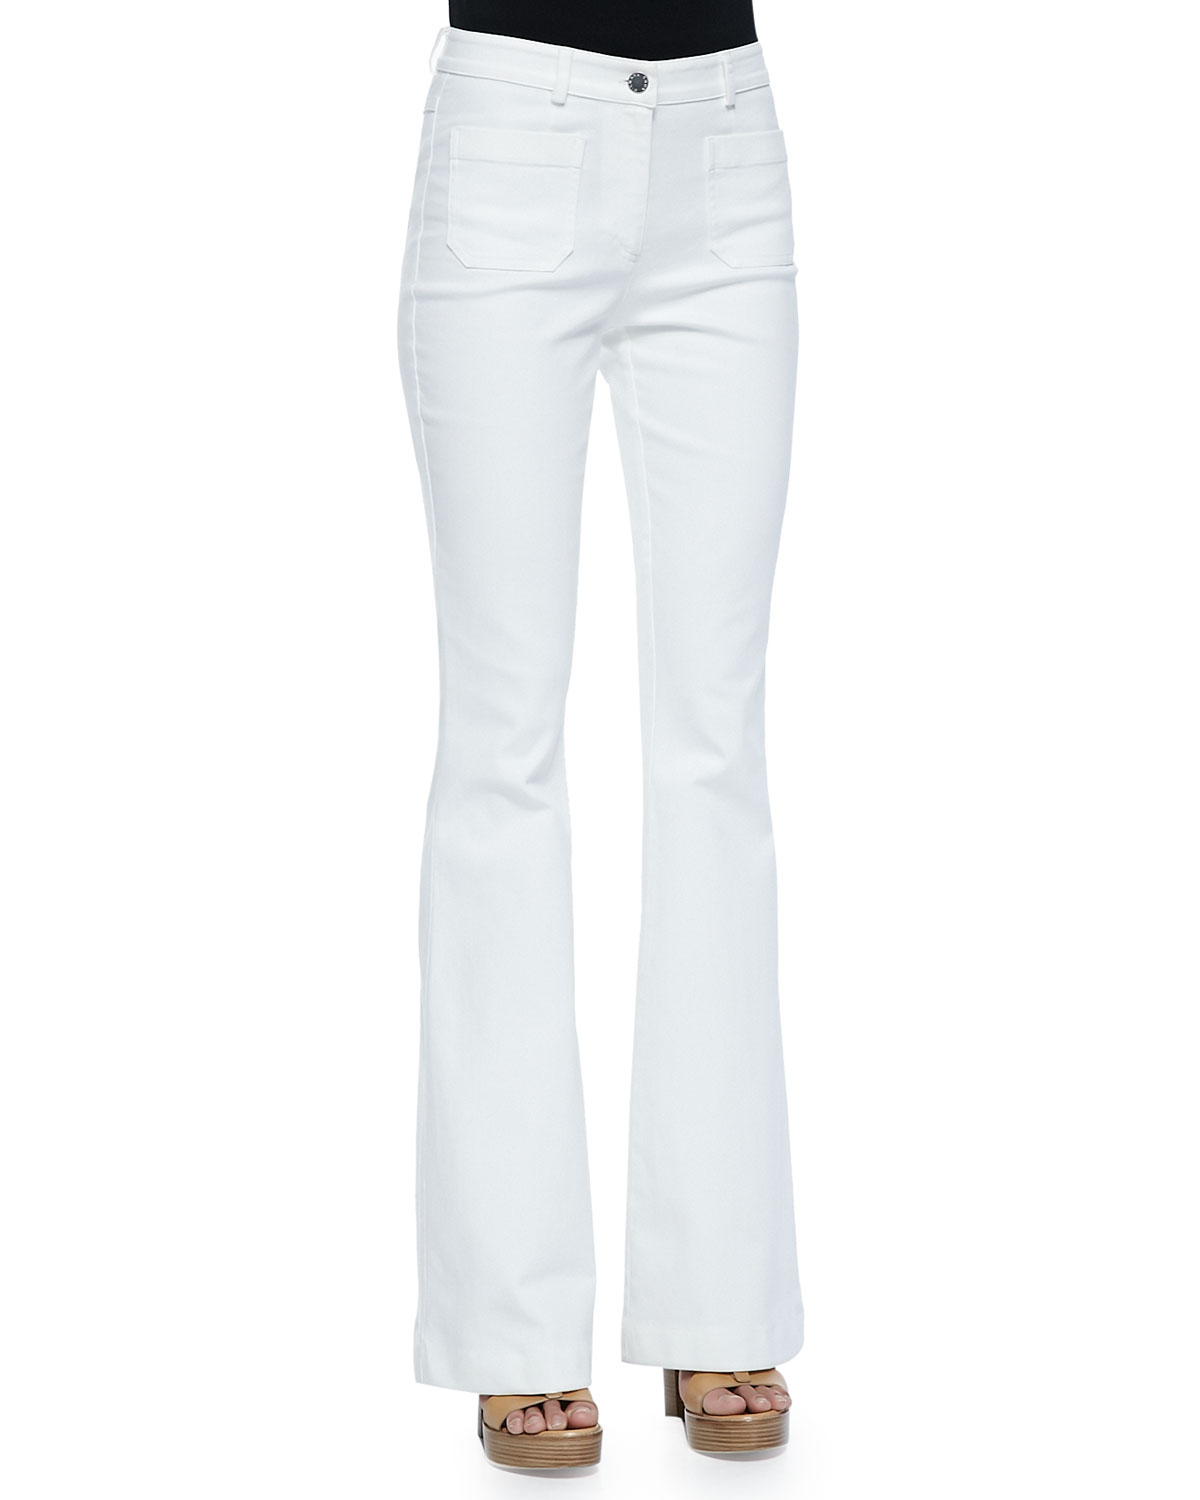 Lyst - Michael Kors Bell-bottom Jeans in White